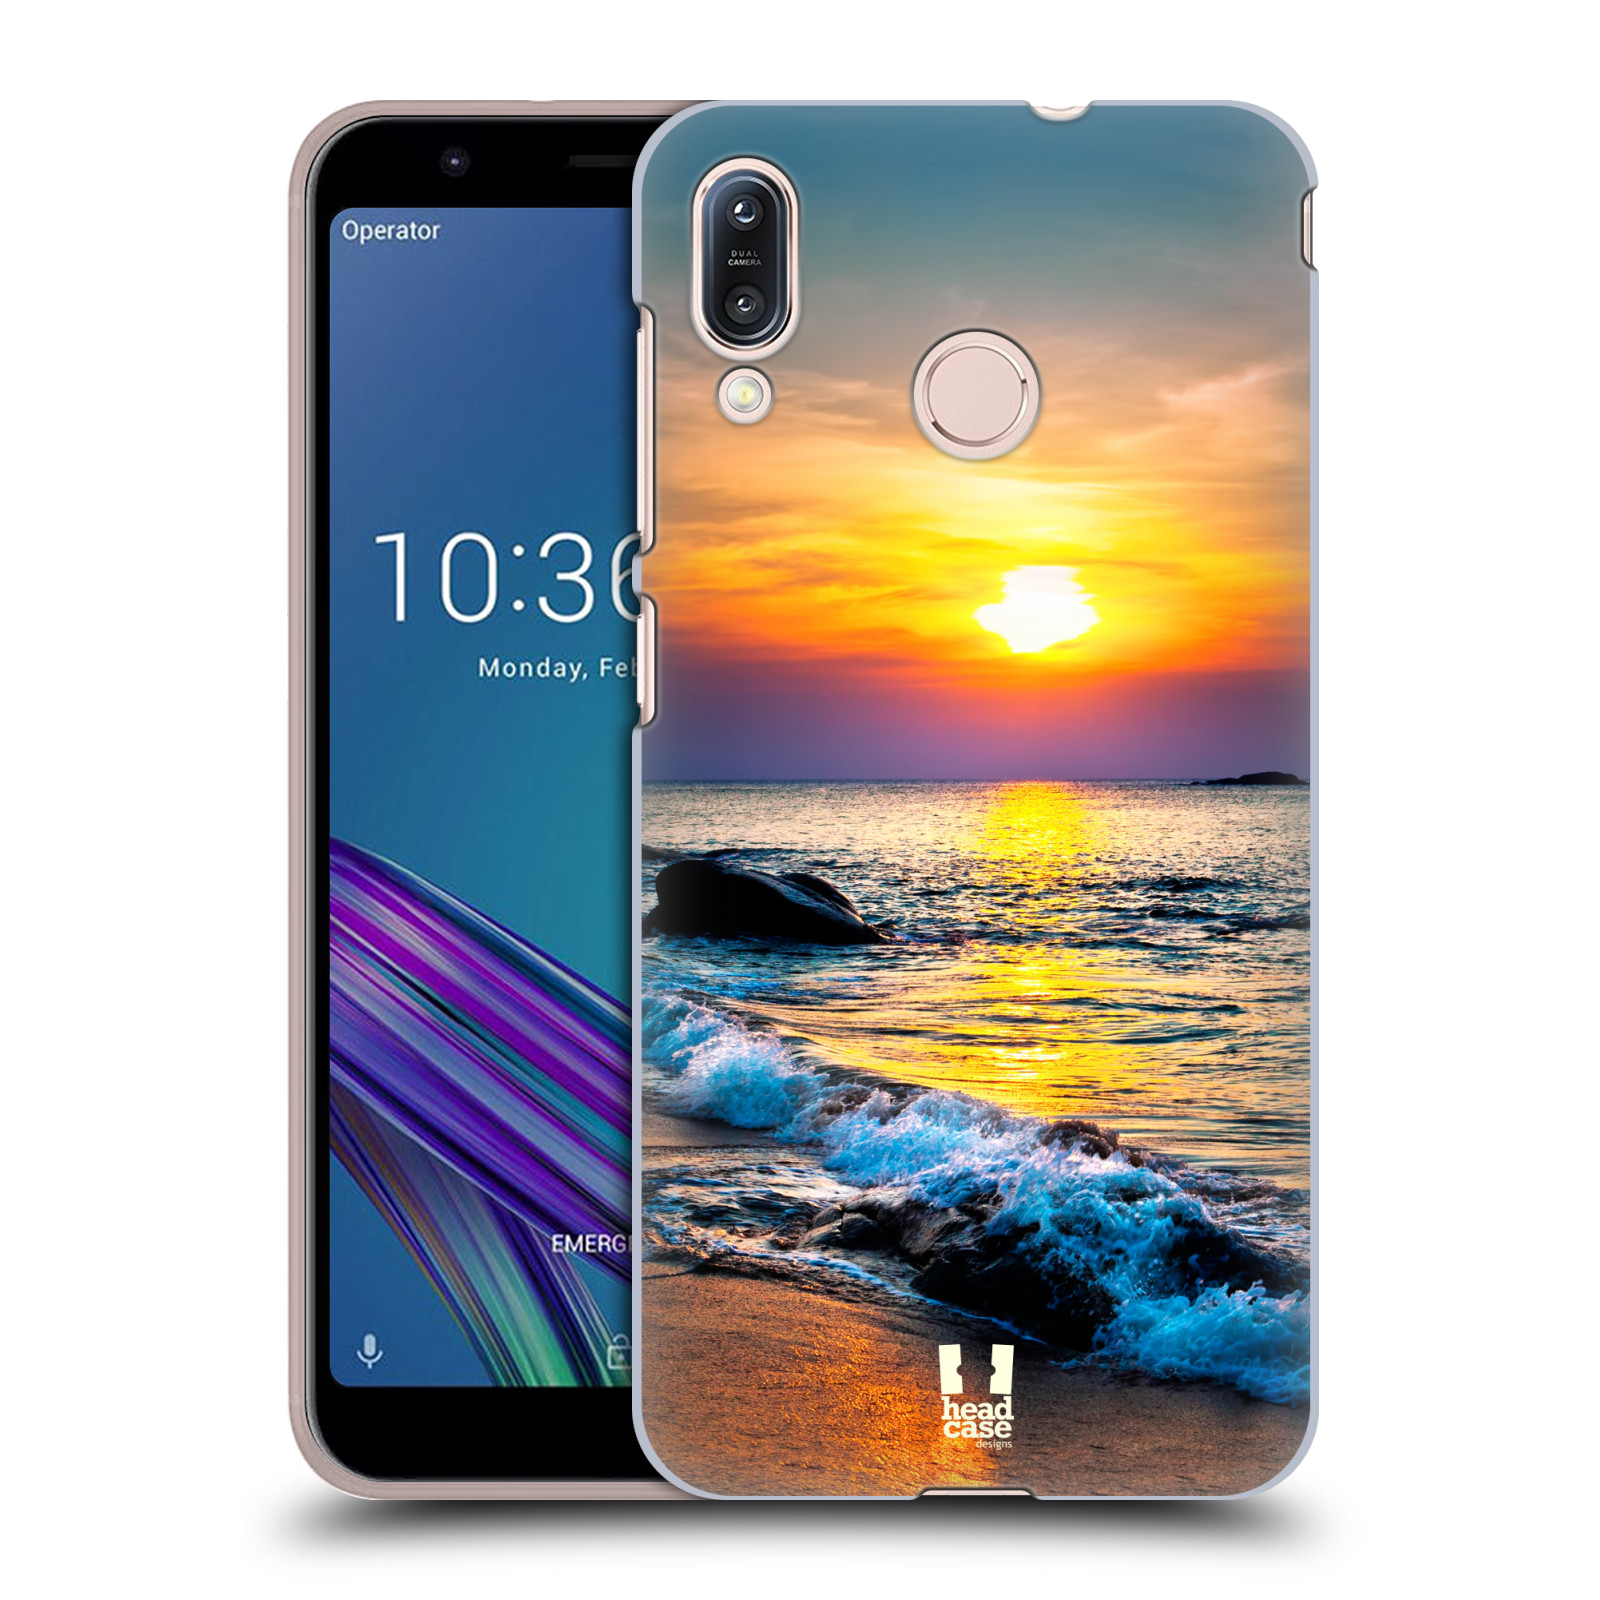 Pouzdro na mobil Asus Zenfone Max M1 (ZB555KL) - HEAD CASE - vzor Pláže a Moře barevný západ slunce